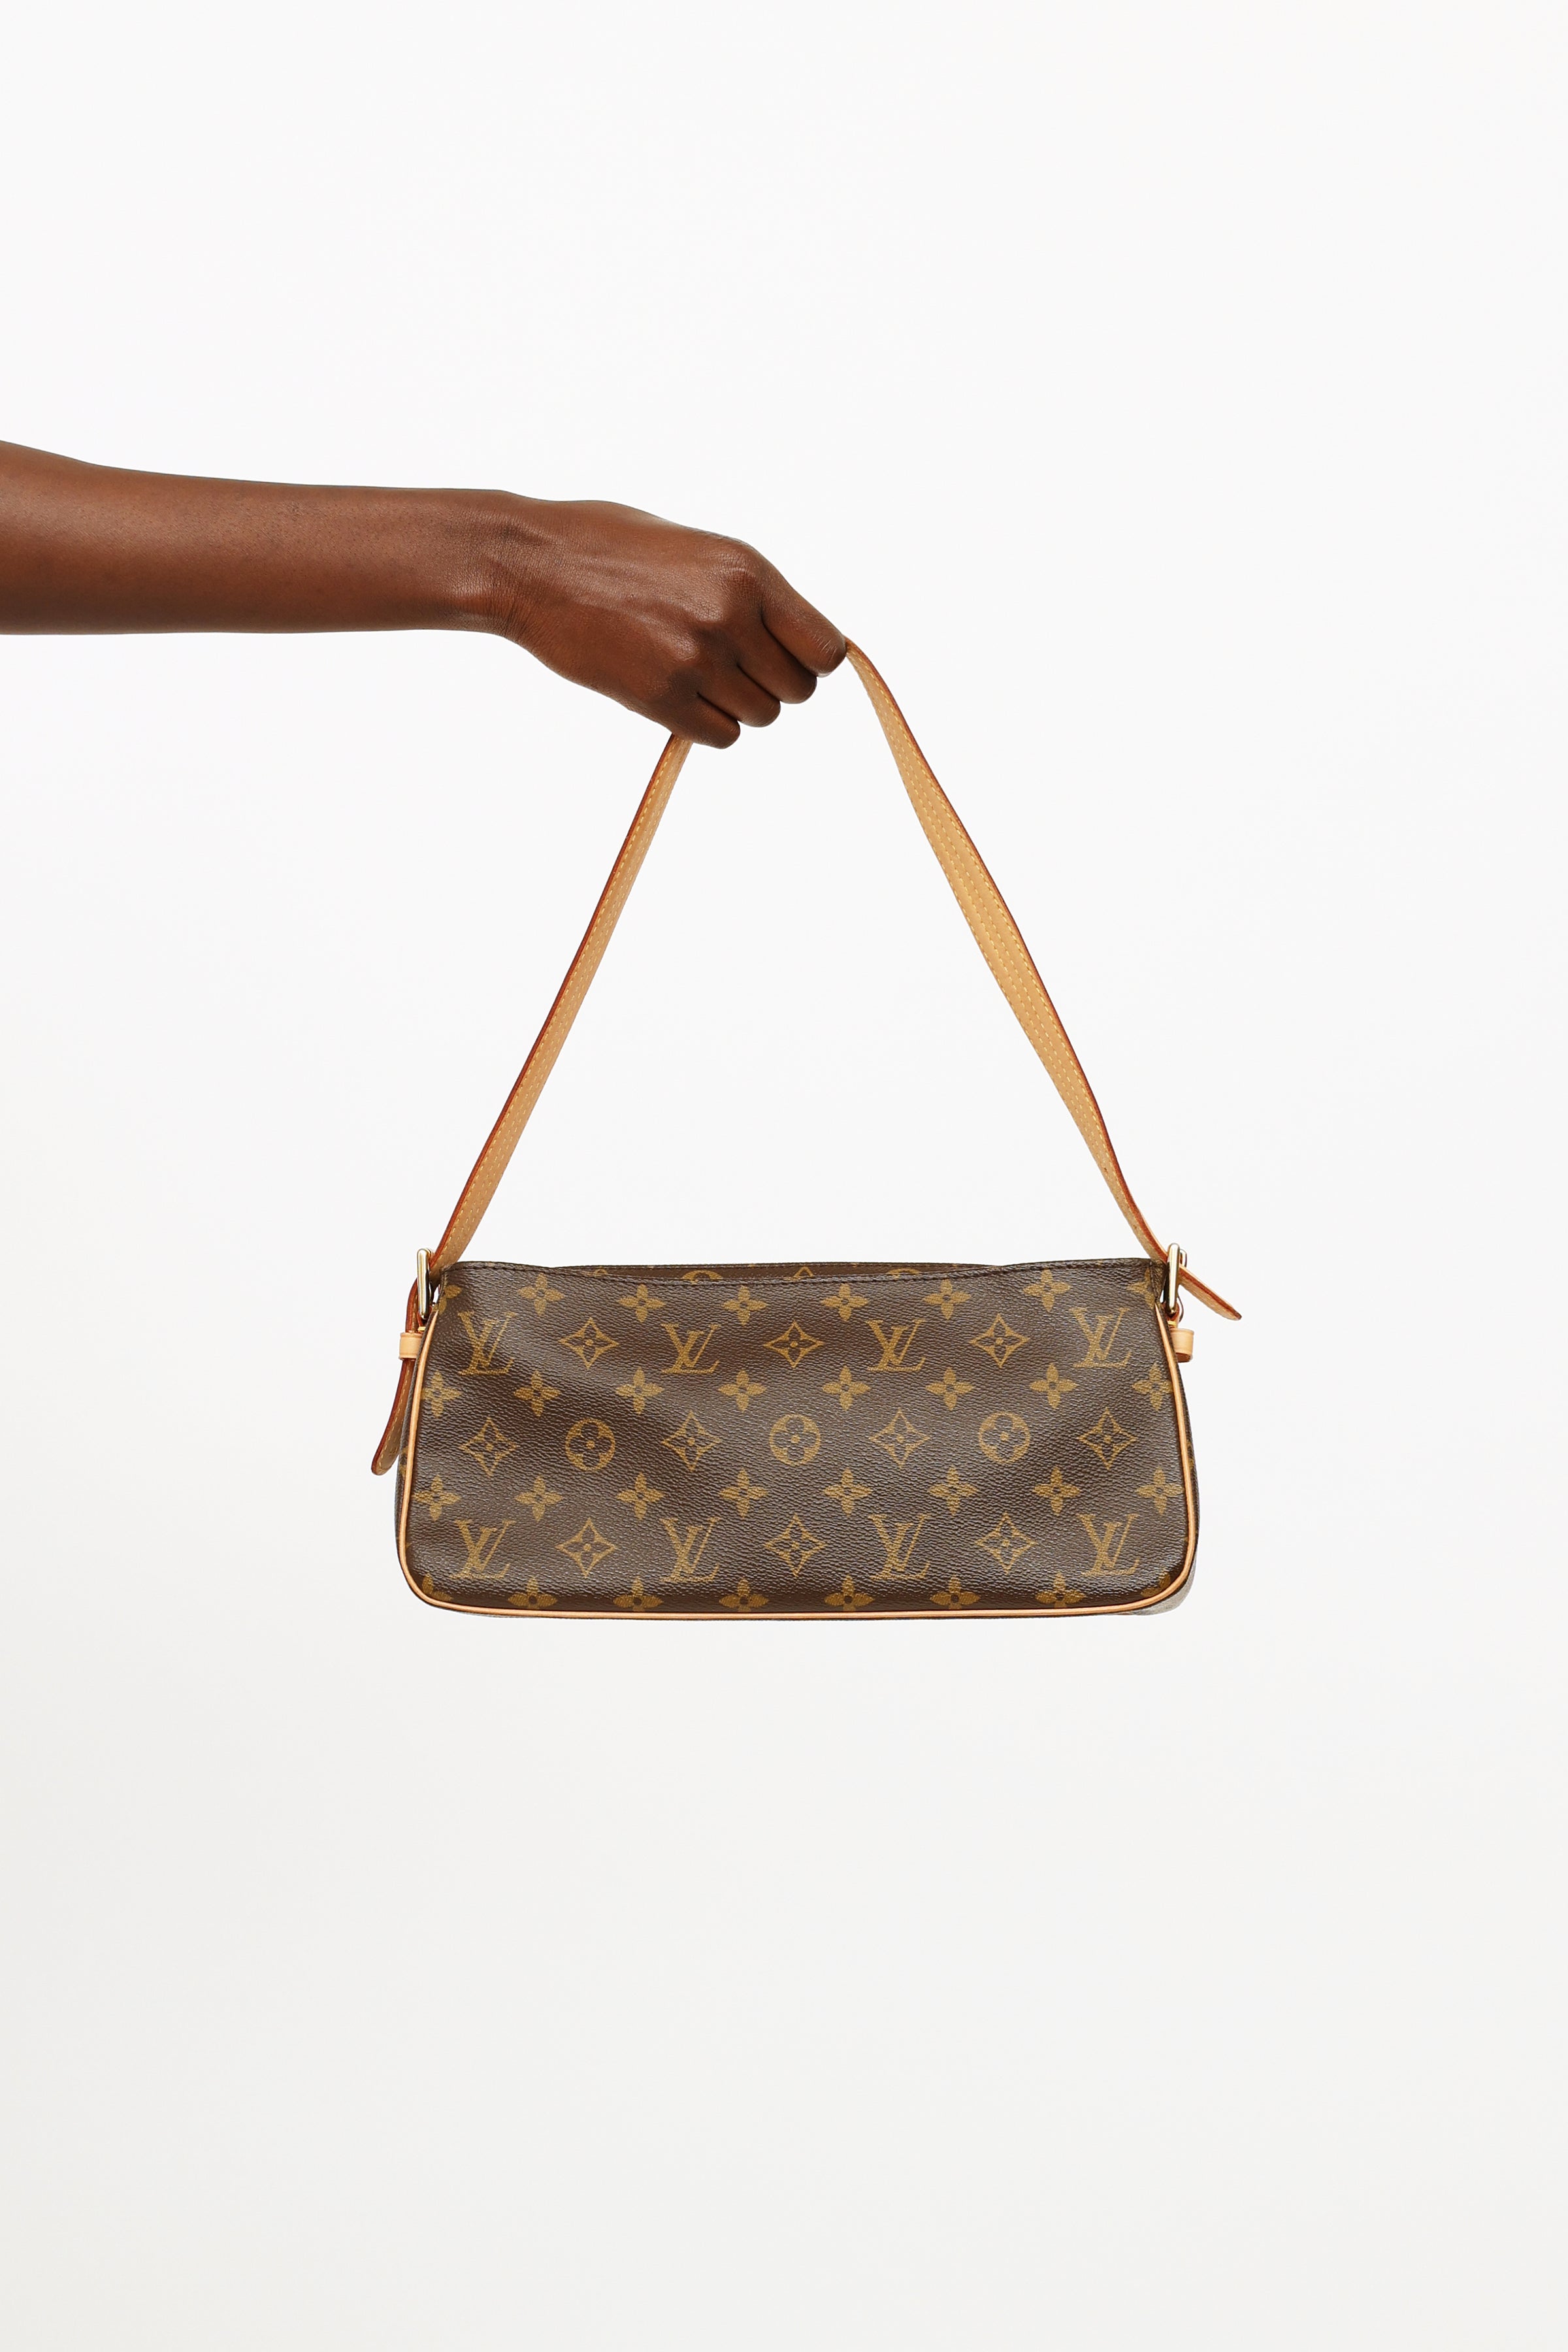 Louis Vuitton Trotteur Brown Canvas Shoulder Bag (Pre-Owned